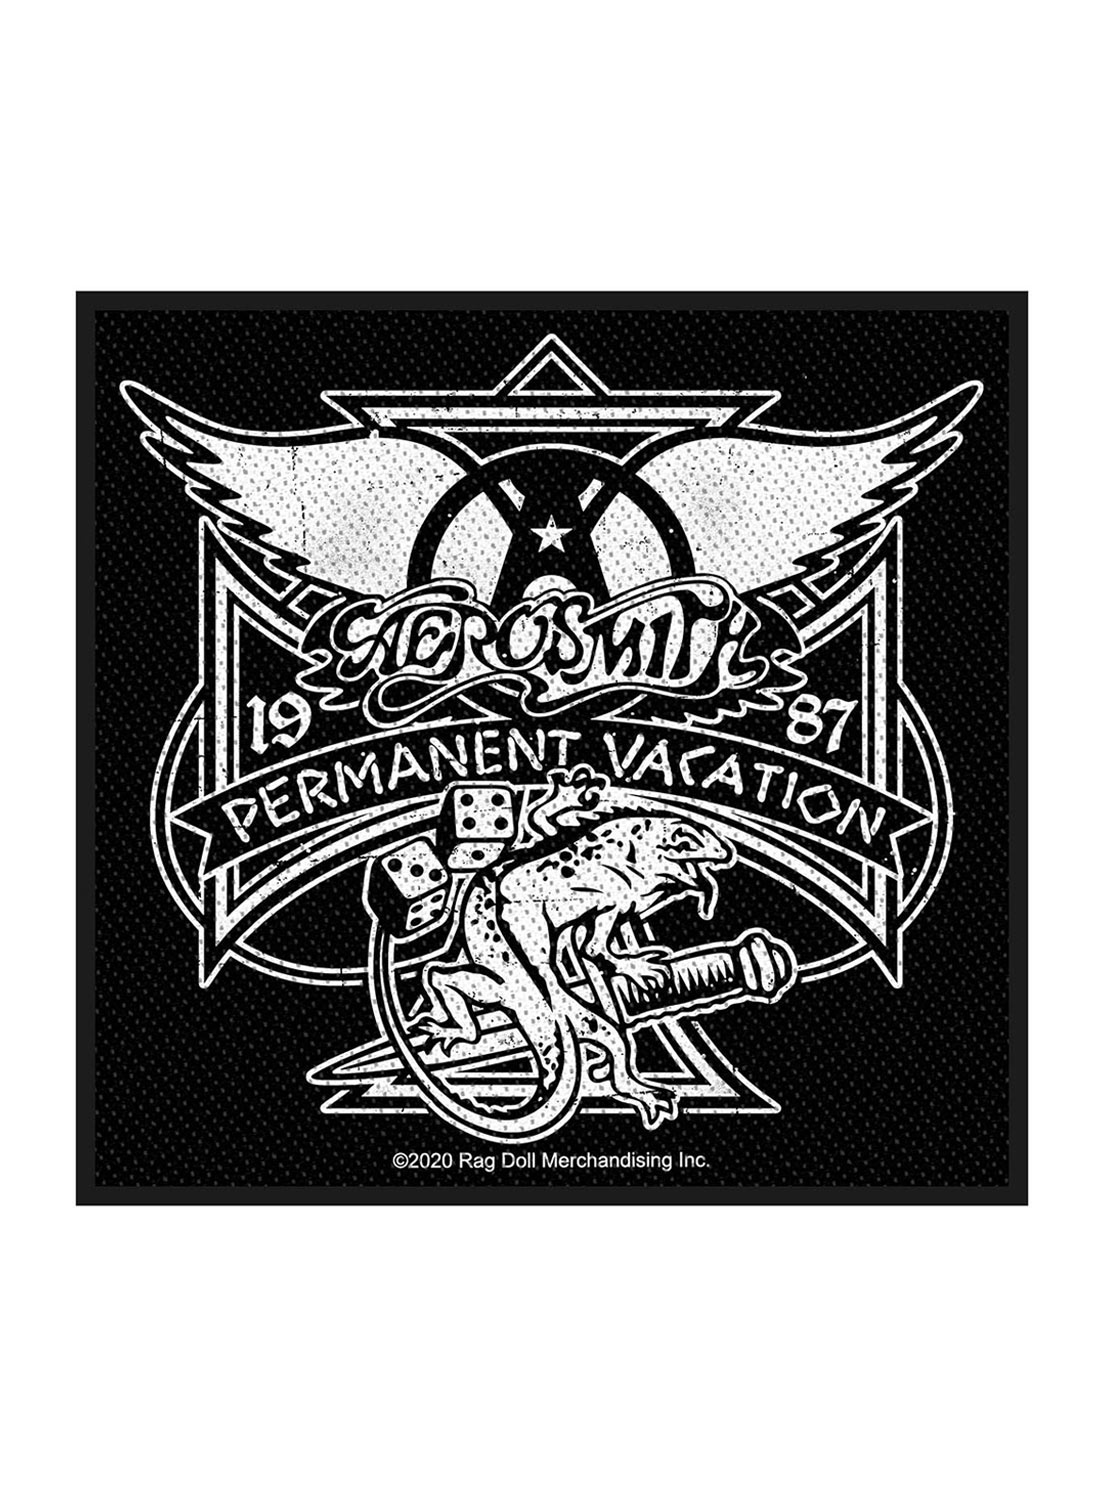 Aerosmith Permanent Vacation